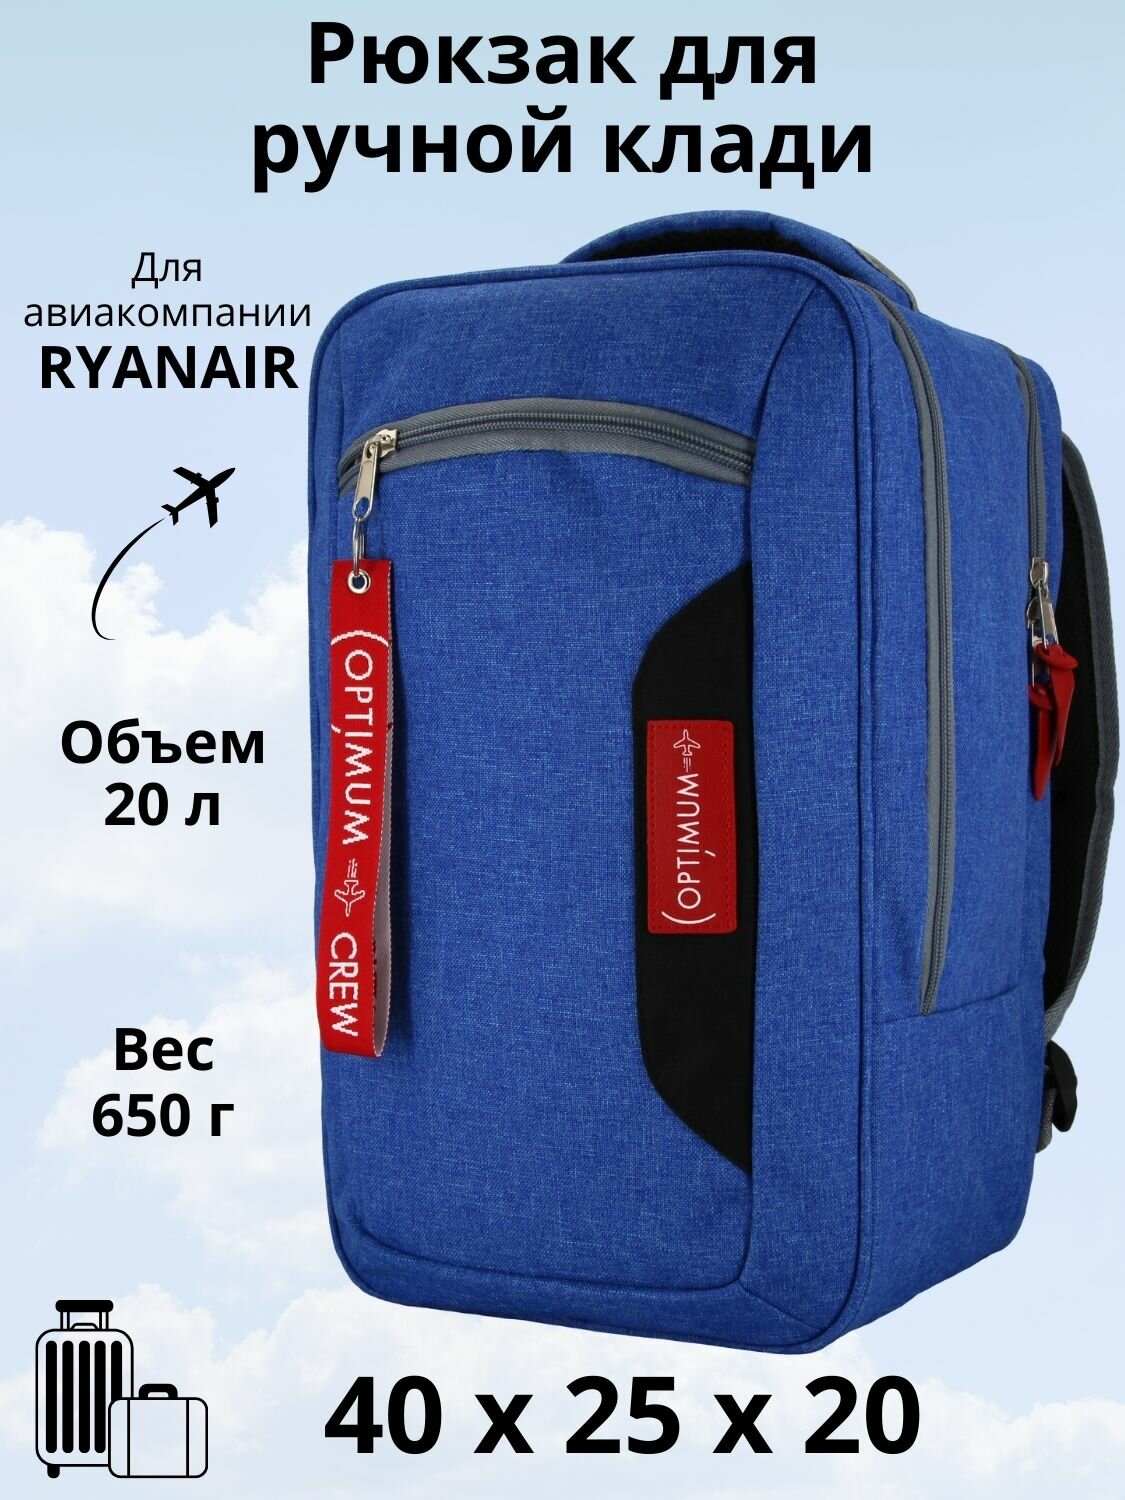 Рюкзак для путешествий дорожный ручная кладь 40х25х20 в самолет Ryanair, голубой